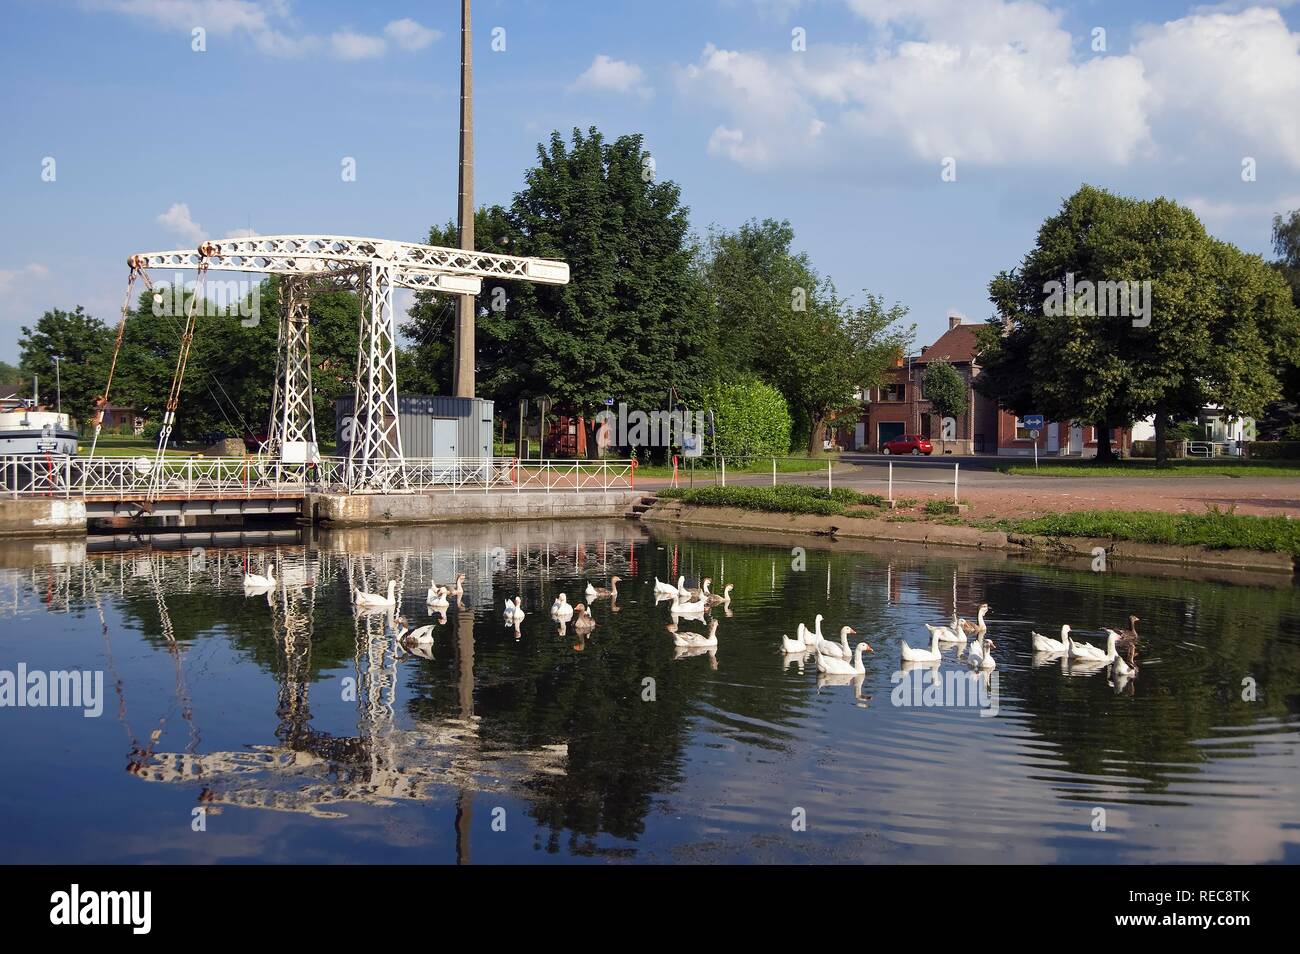 Canal du Centre, Unesco World Heritage Site, Bascule bridge, Hainaut Province, Belgium Stock Photo